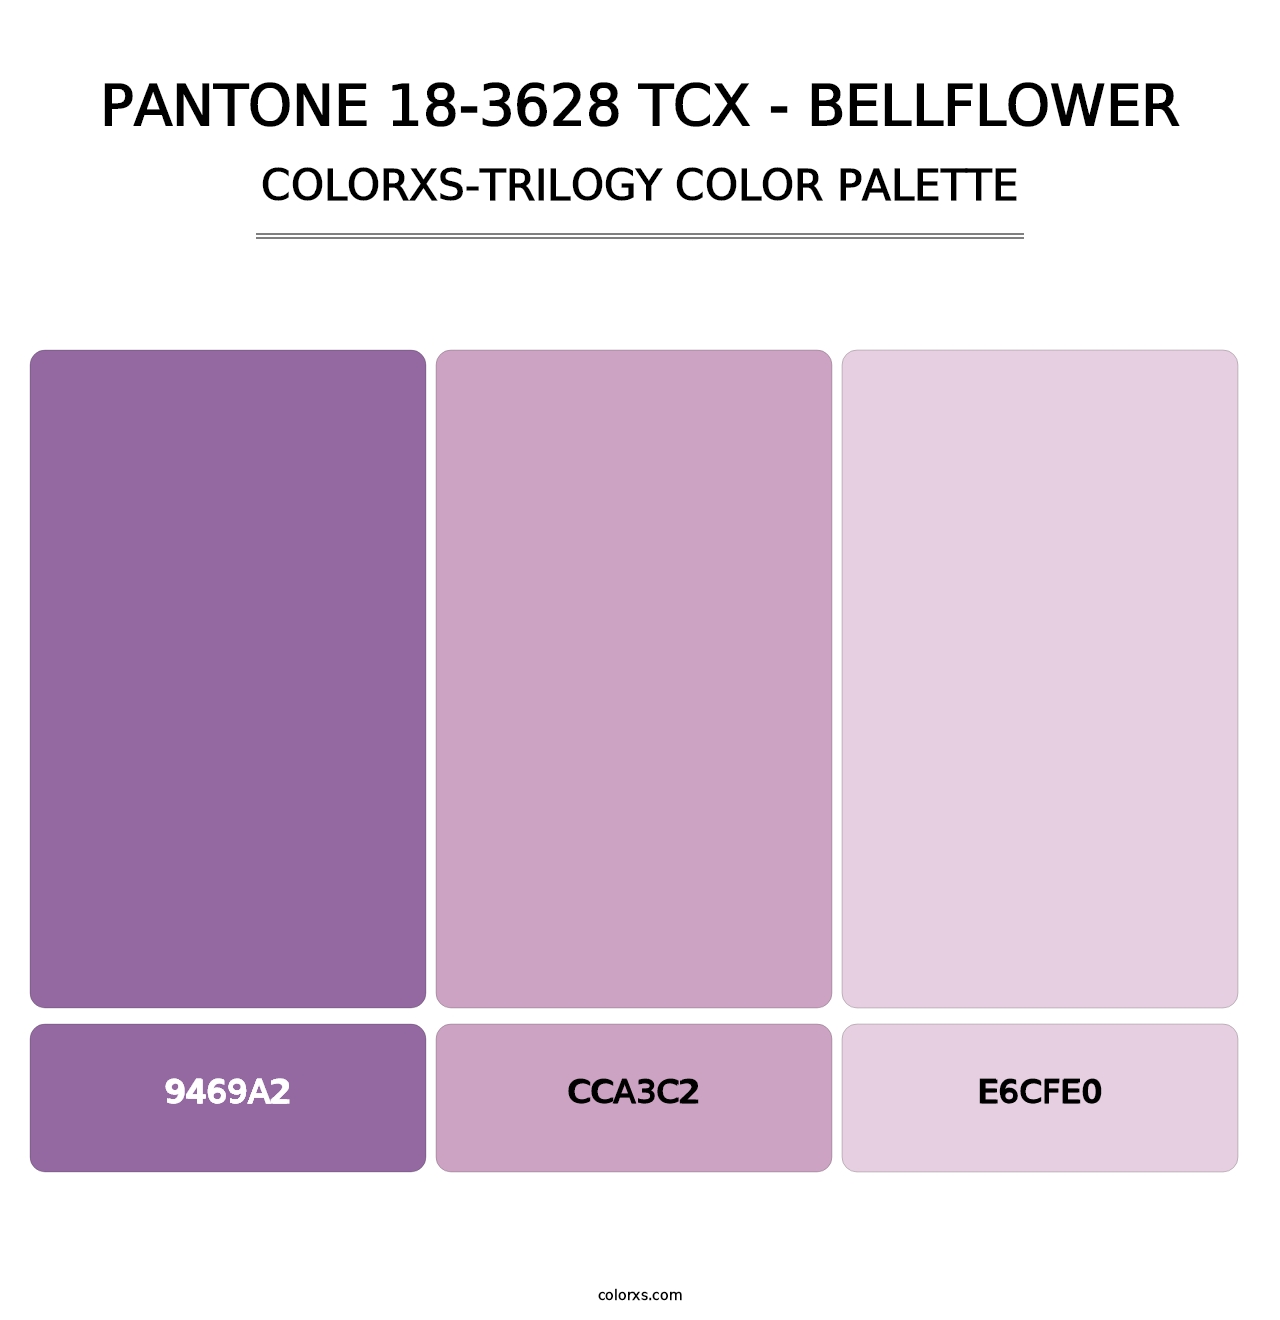 PANTONE 18-3628 TCX - Bellflower - Colorxs Trilogy Palette